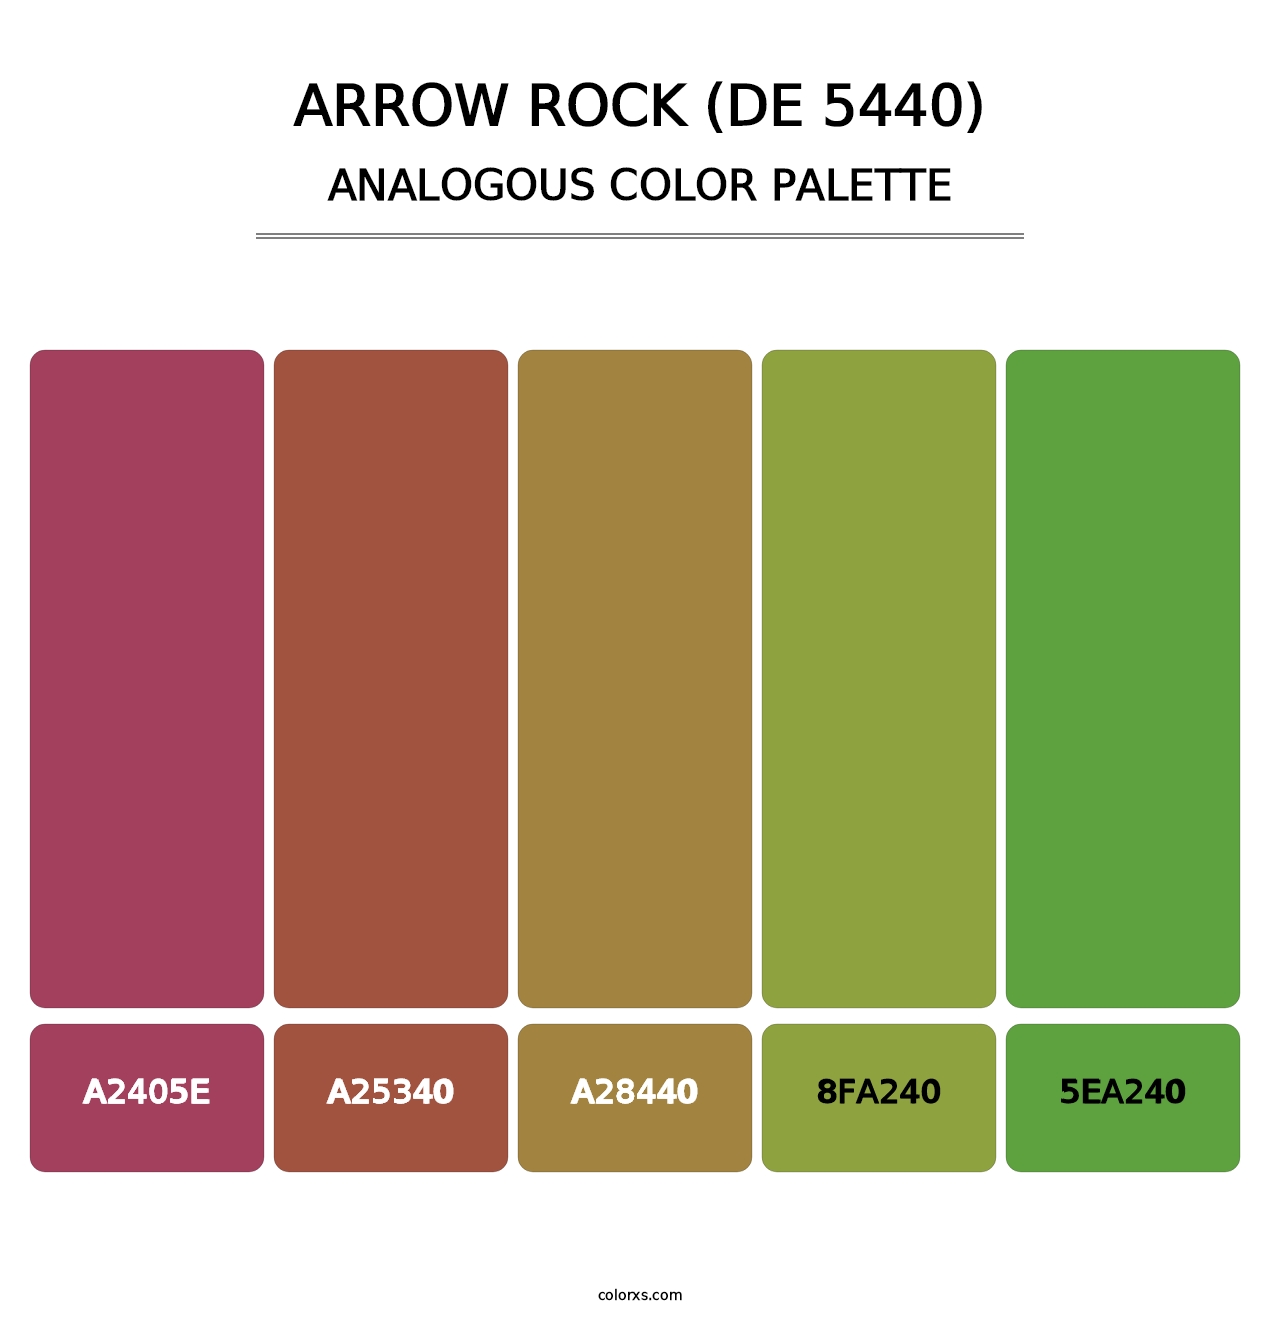 Arrow Rock (DE 5440) - Analogous Color Palette